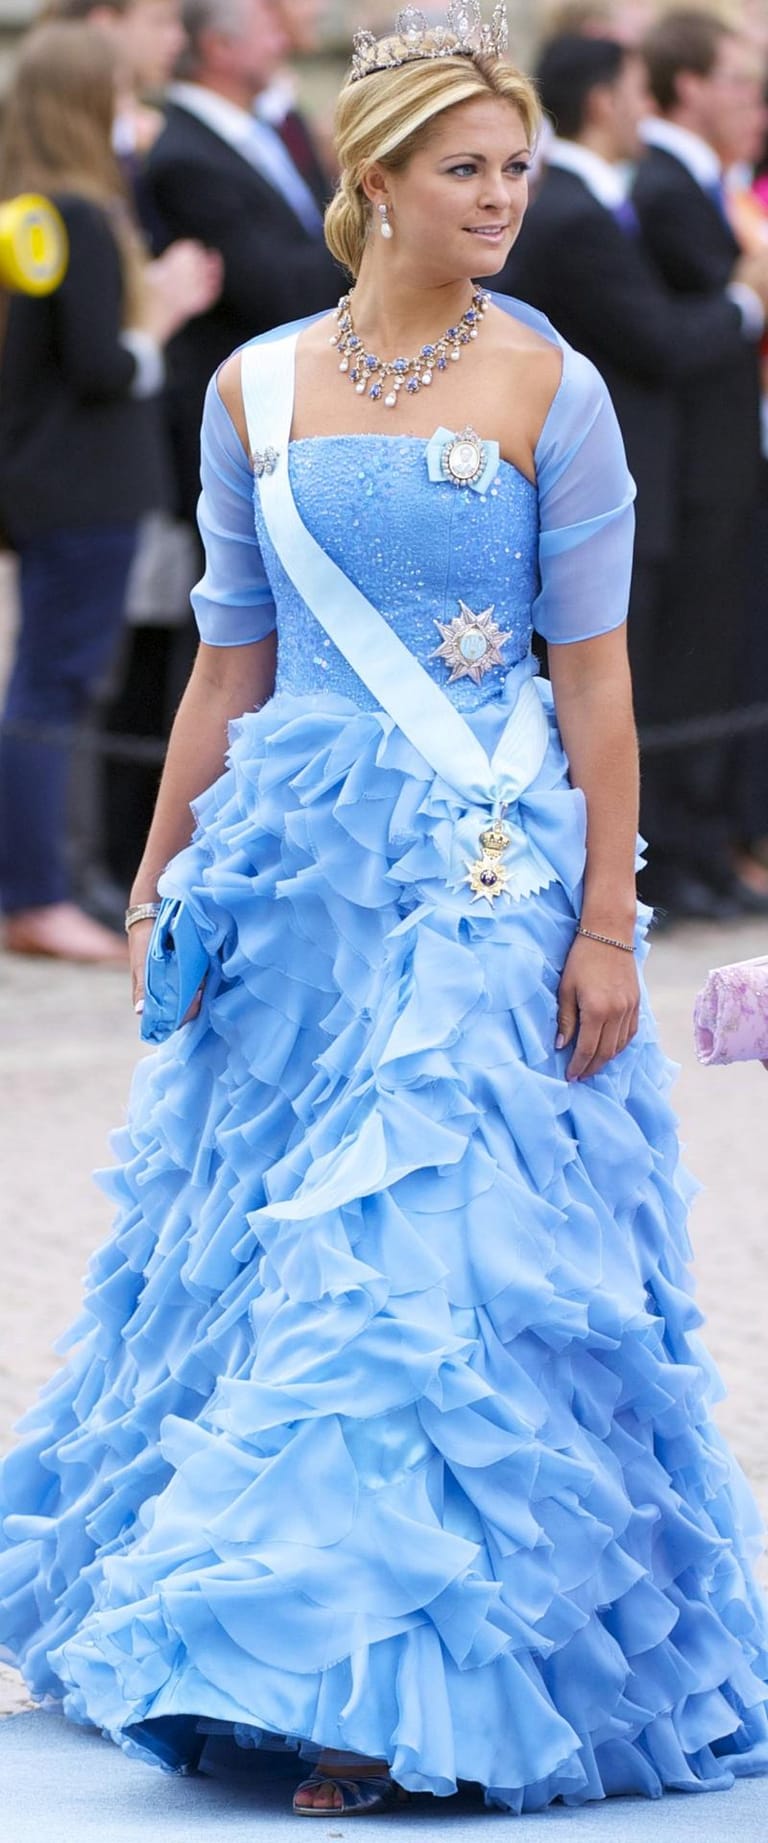 Prinzessin Madeleine im Mai 2011 bei der Hochzeit von Kronprinzessin Victoria